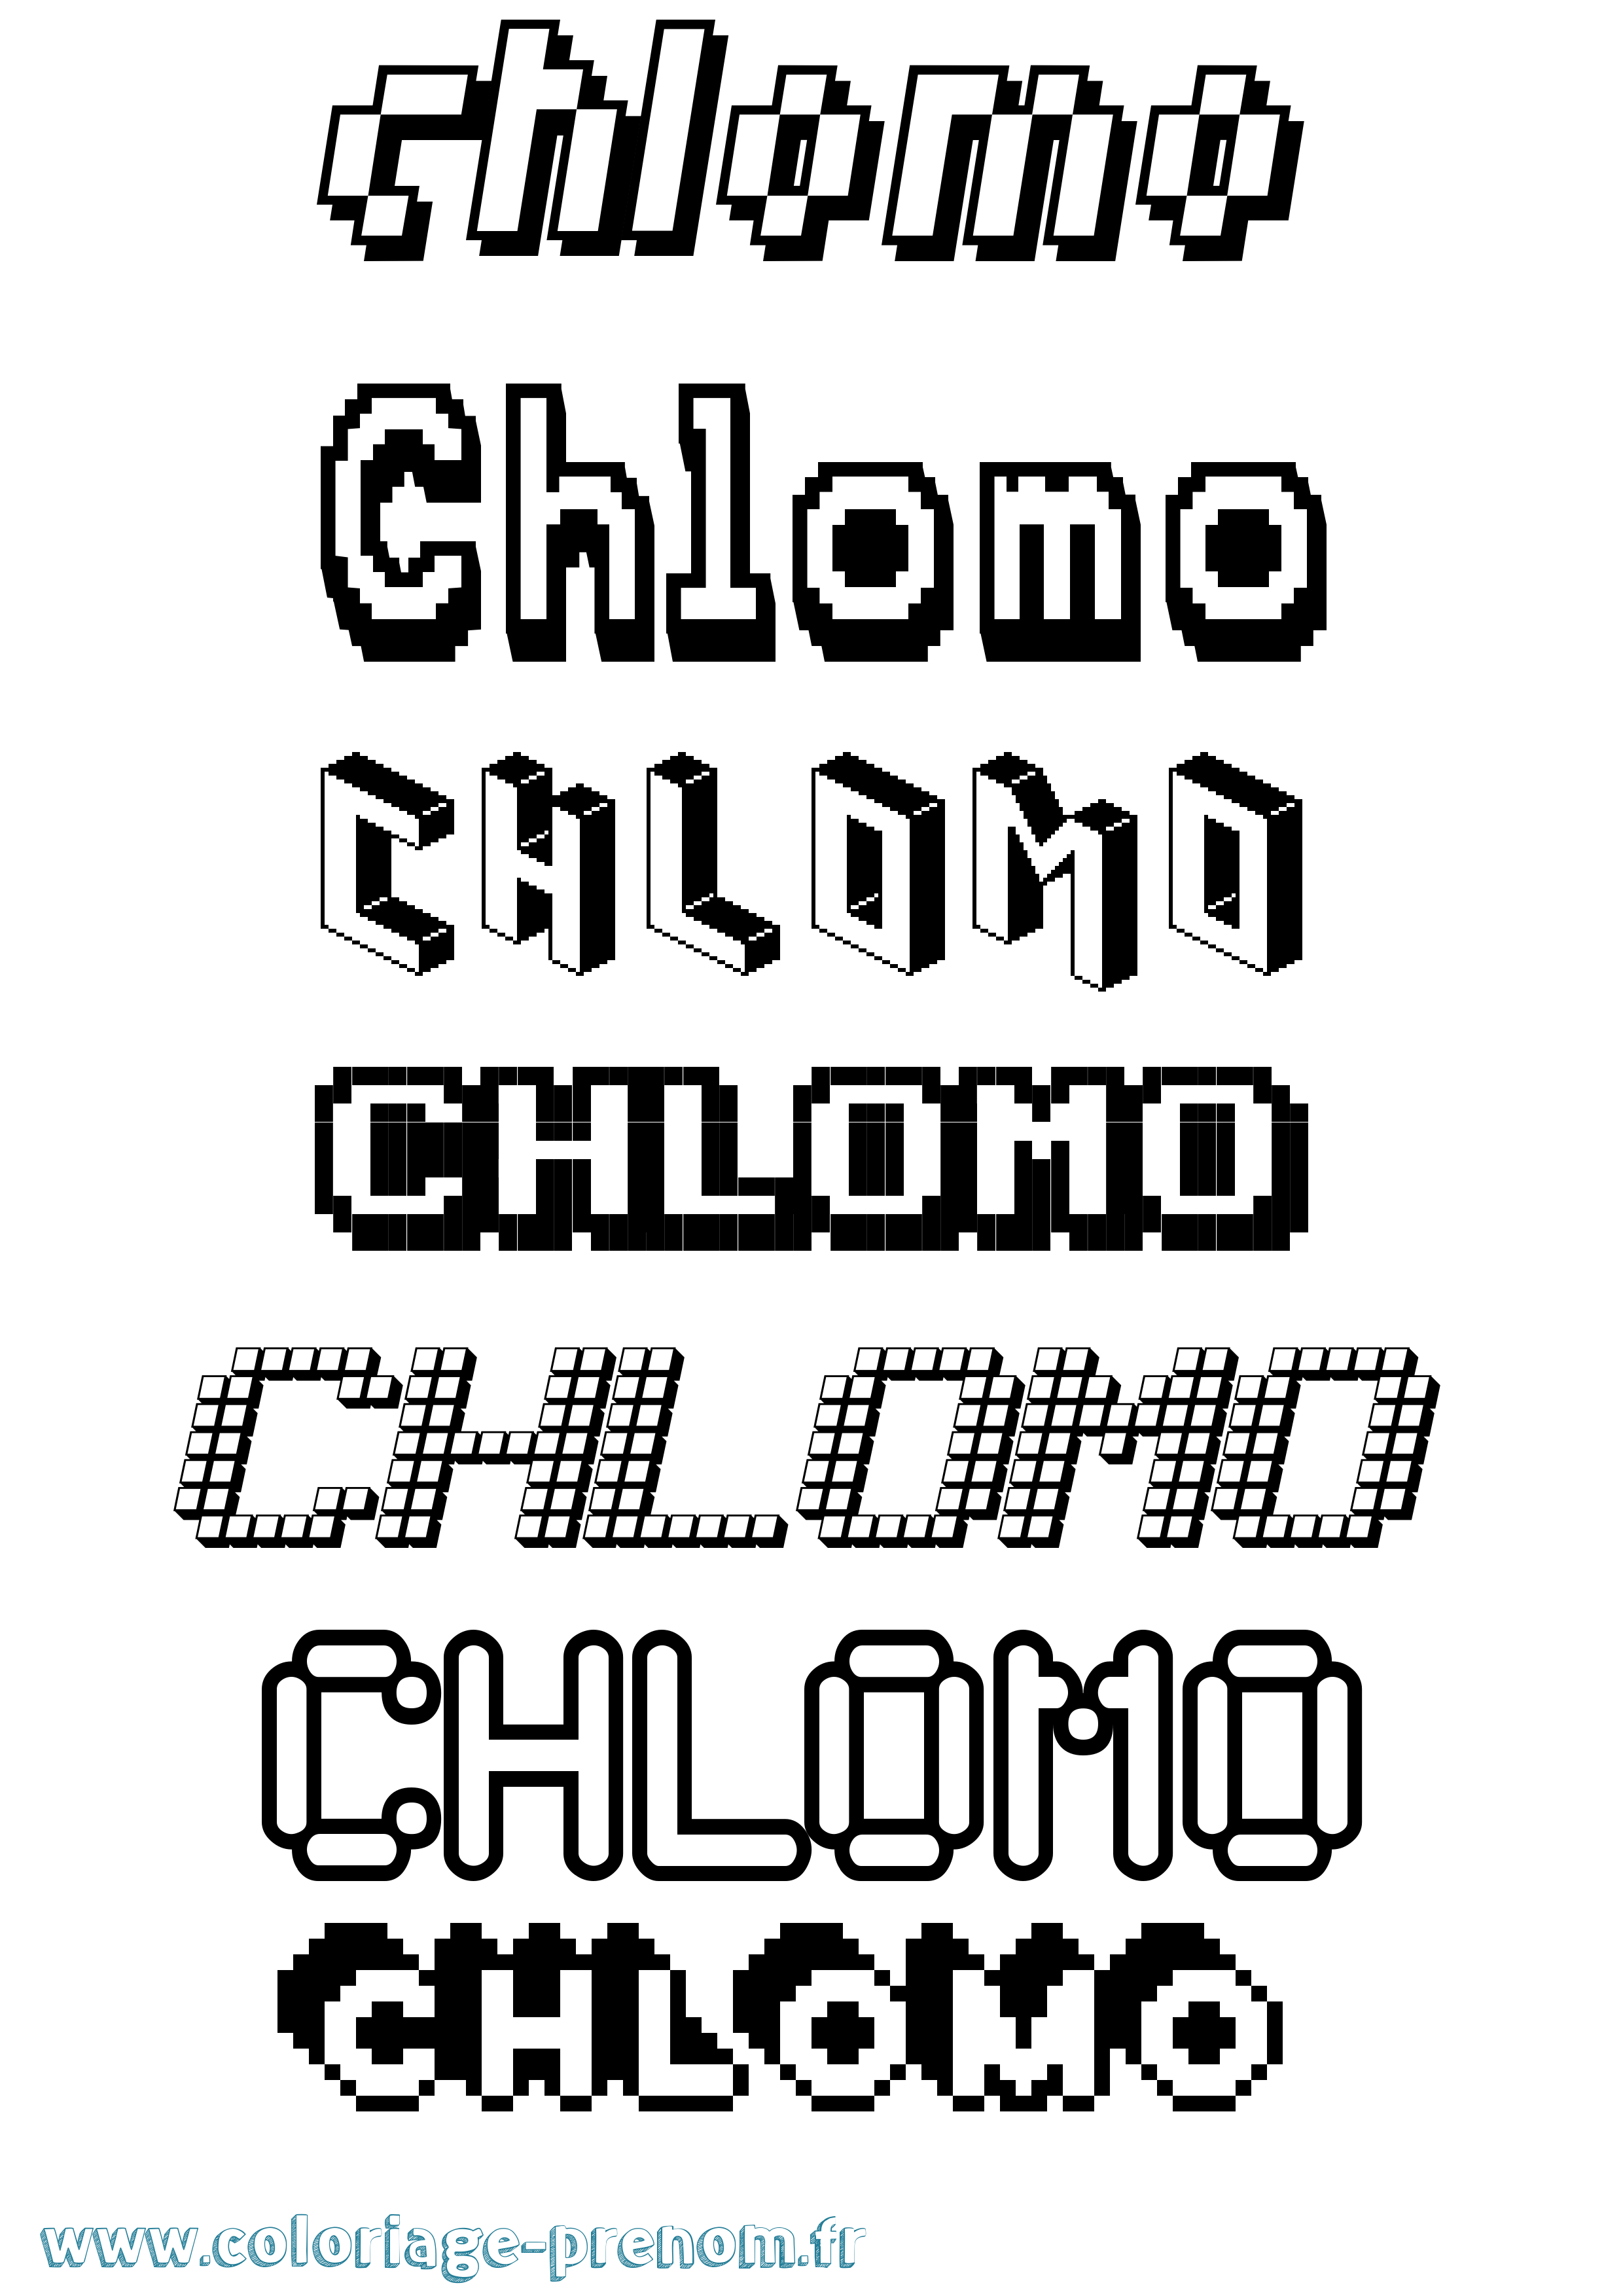 Coloriage prénom Chlomo Pixel